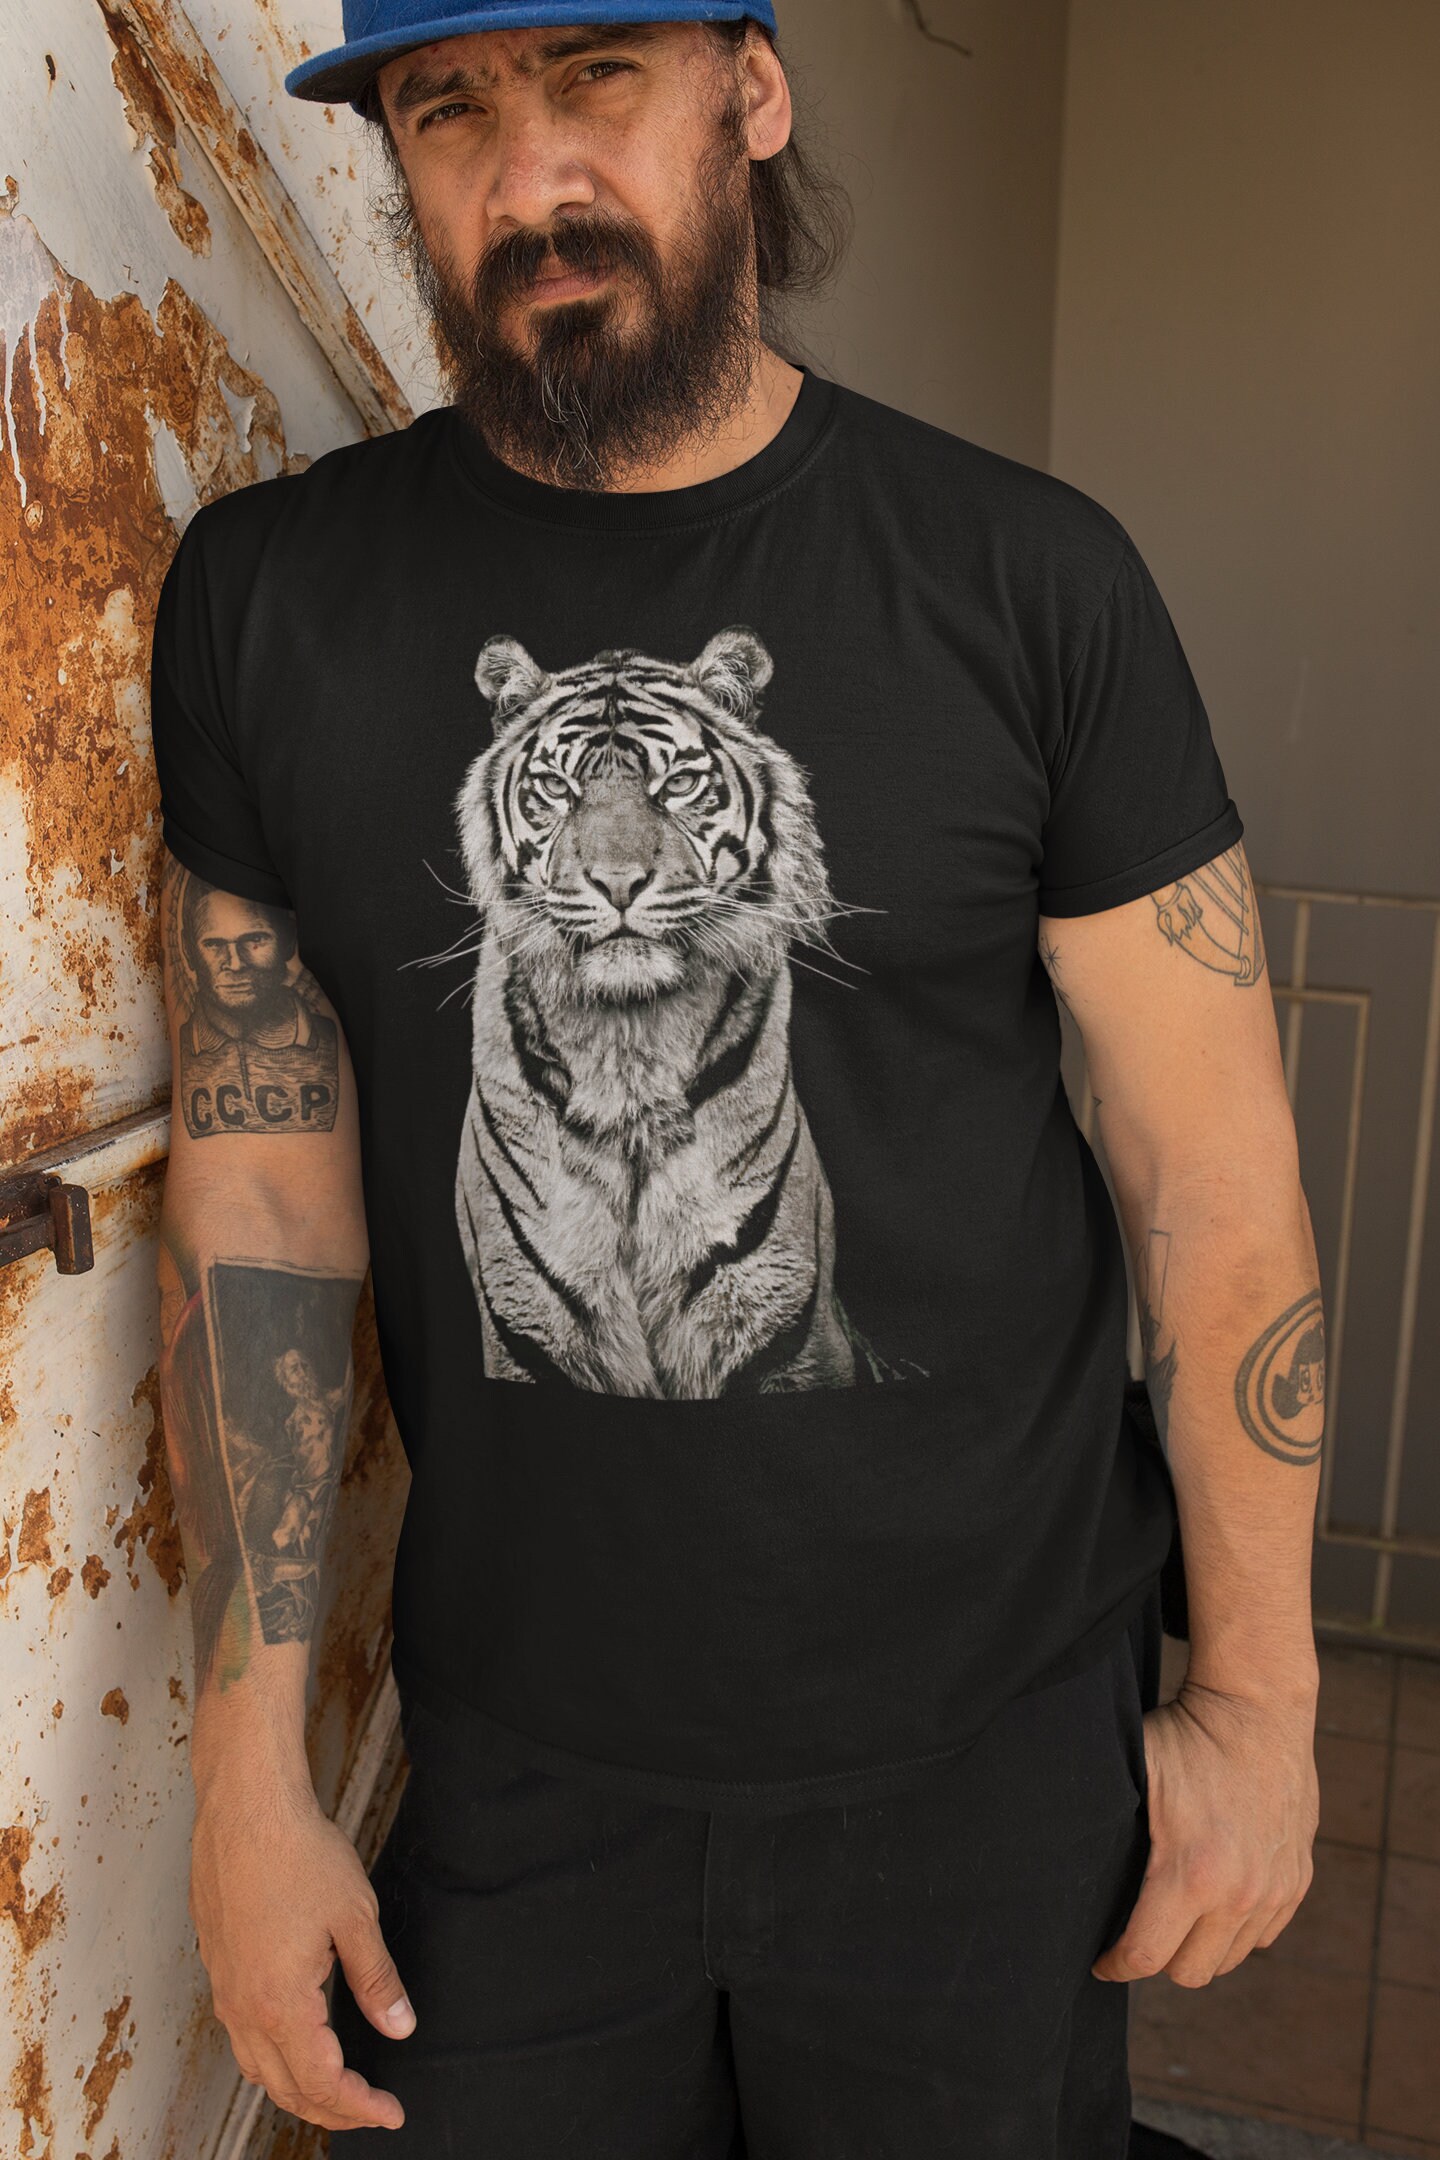 Tiger Face Shirt / Tiger Face / Majestic Tiger / Wild Tiger / - Etsy